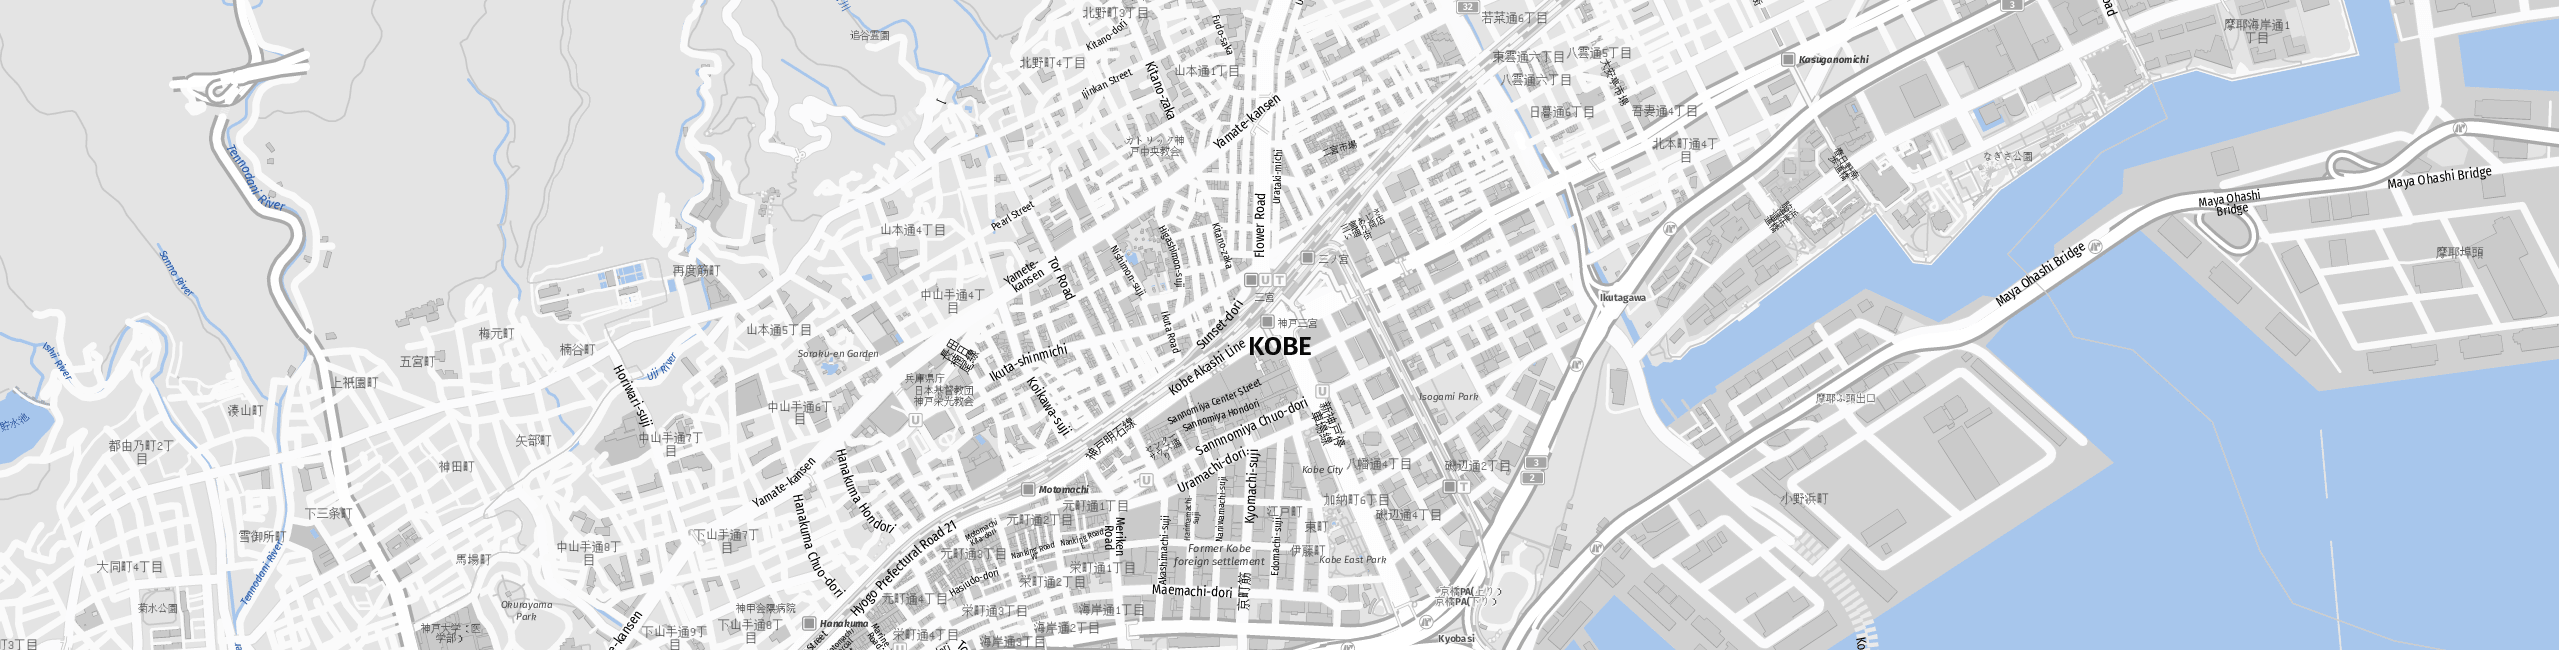 Stadtplan Kobe zum Downloaden.